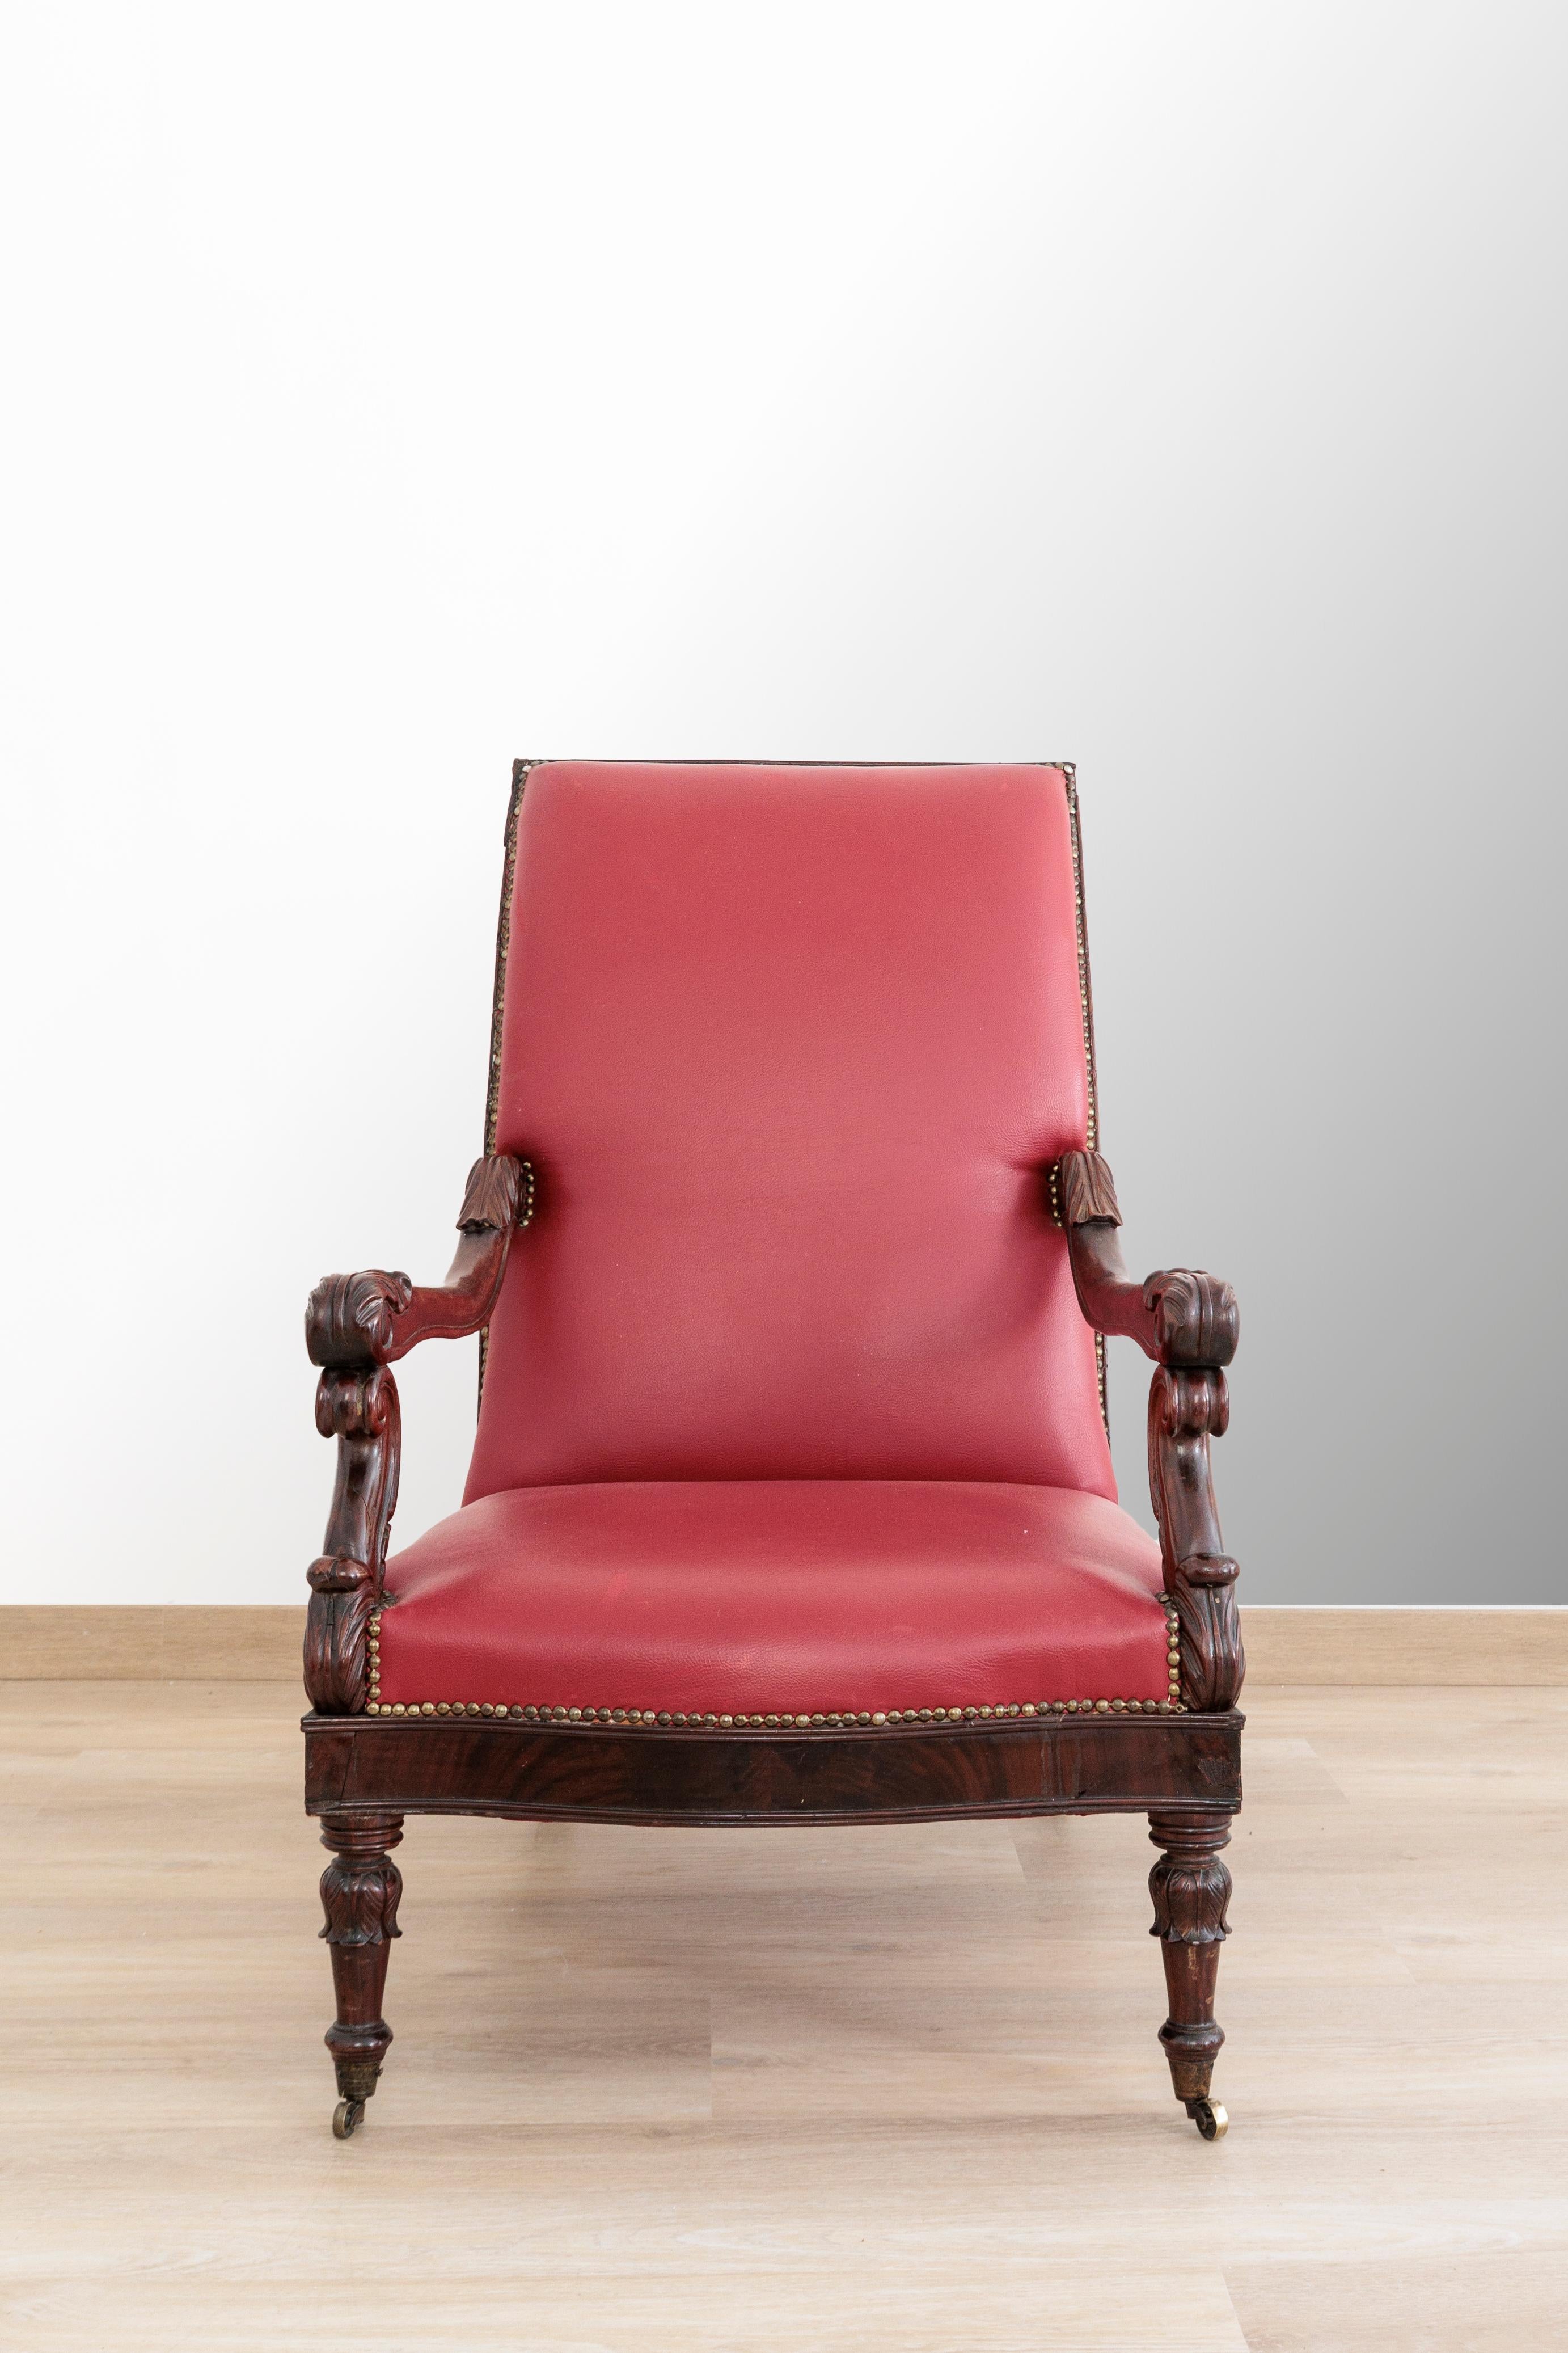 Carlo X Lounge-Sessel in Mahagoni und Mahagoni-Feder Schön und bequem, in rotem Leder gepolstert. Frankreich 1840er Jahre. Original. Der Sessel hat Räder an den Vorderbeinen, um die Bewegung zu erleichtern. Er hat geschnitzte Armlehnen und